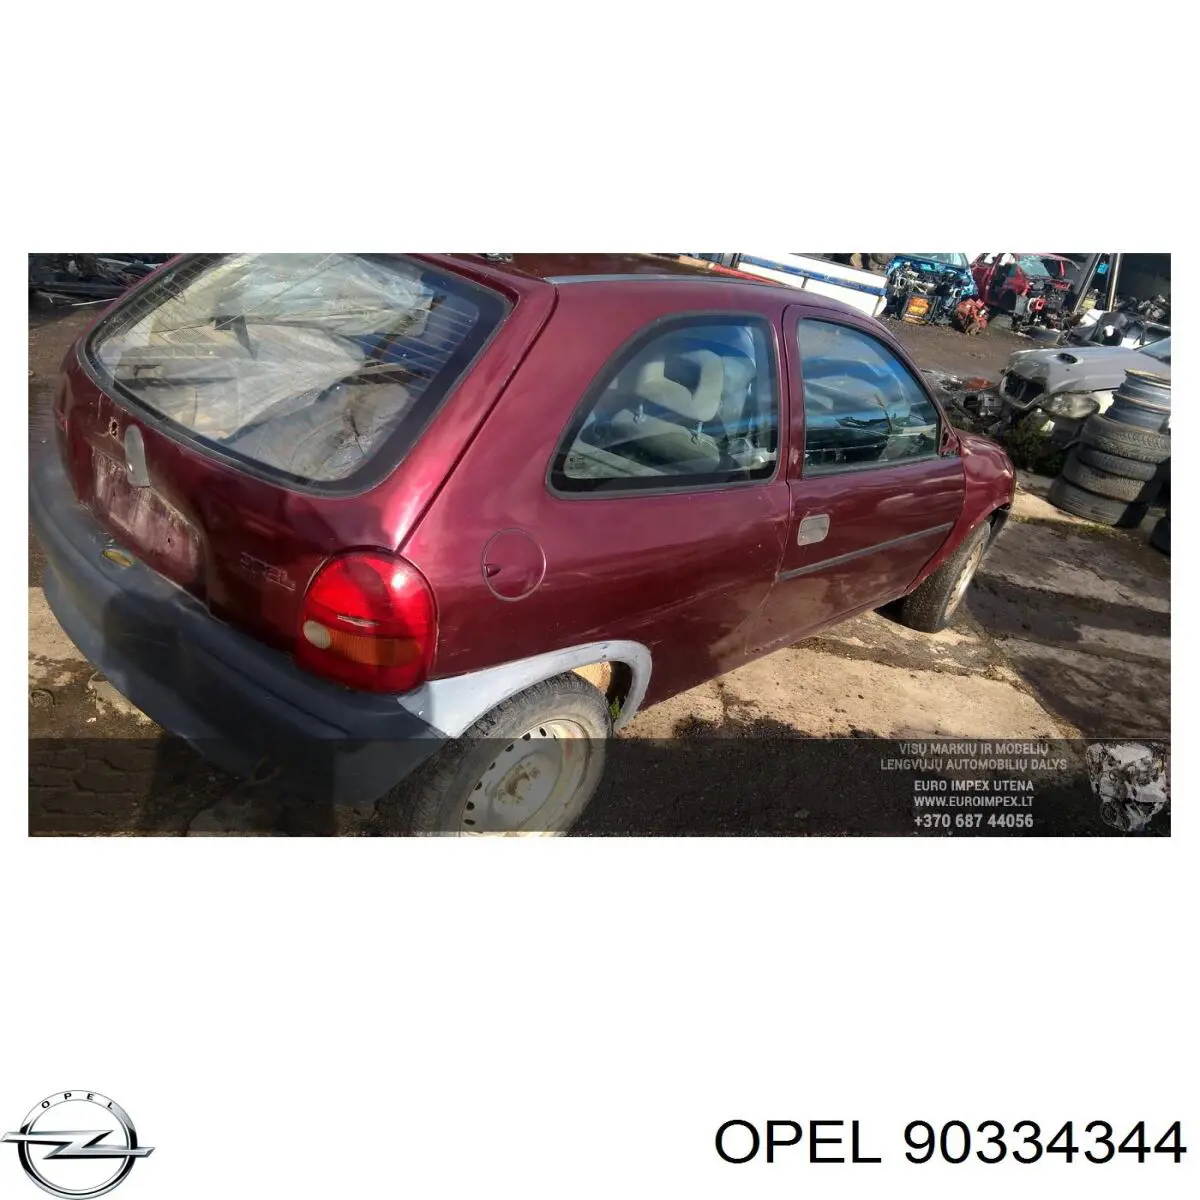 Caja de cambios mecánica, completa para Opel Corsa (93, 94, 98, 99)